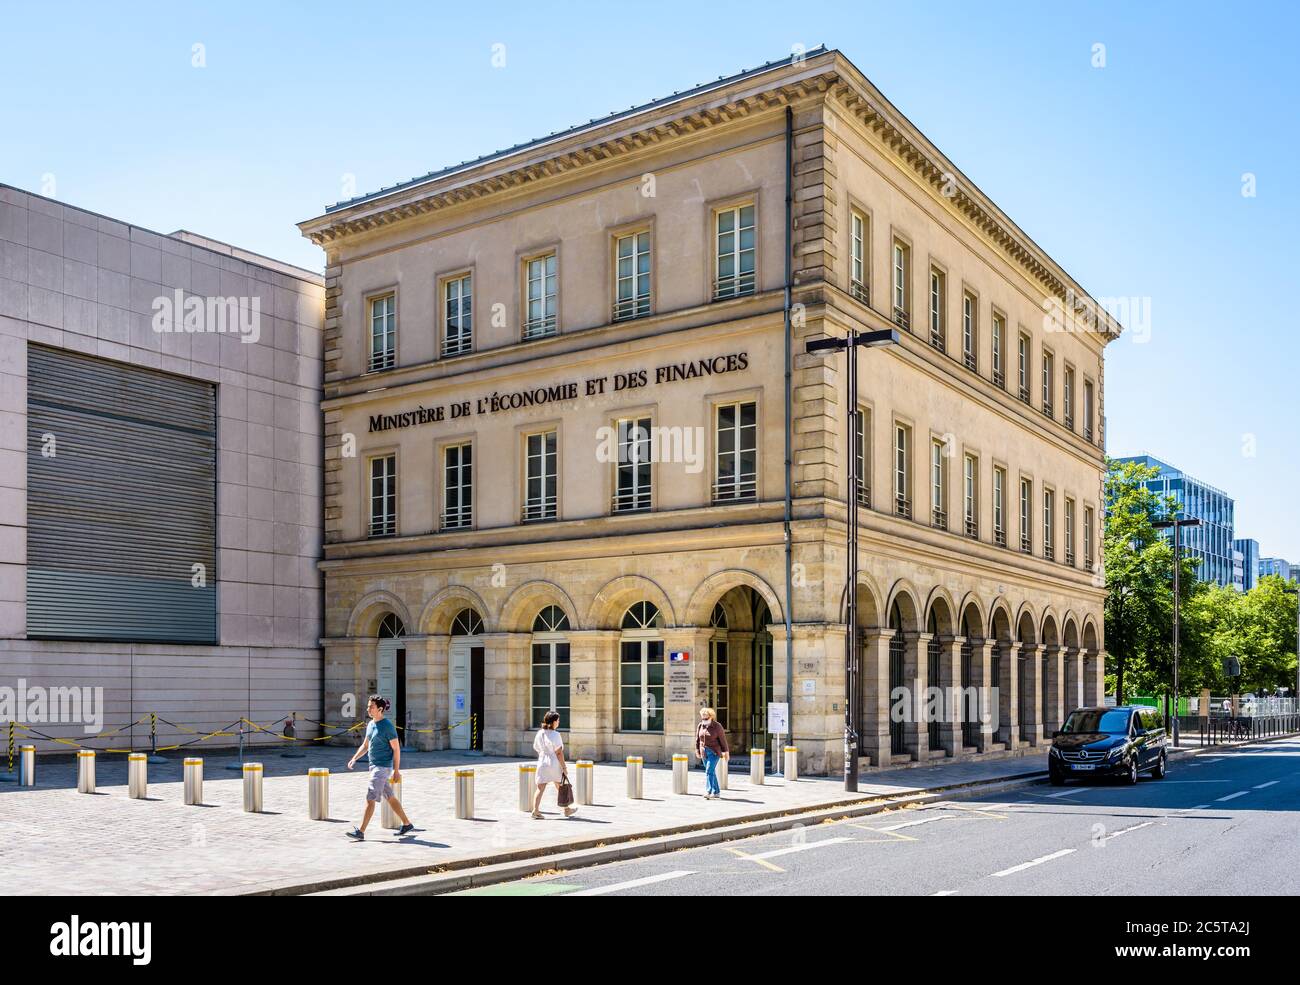 Vista generale dell'edificio di accoglienza del Ministero dell'Economia e delle Finanze nel quartiere di Bercy a Parigi, Francia. Foto Stock